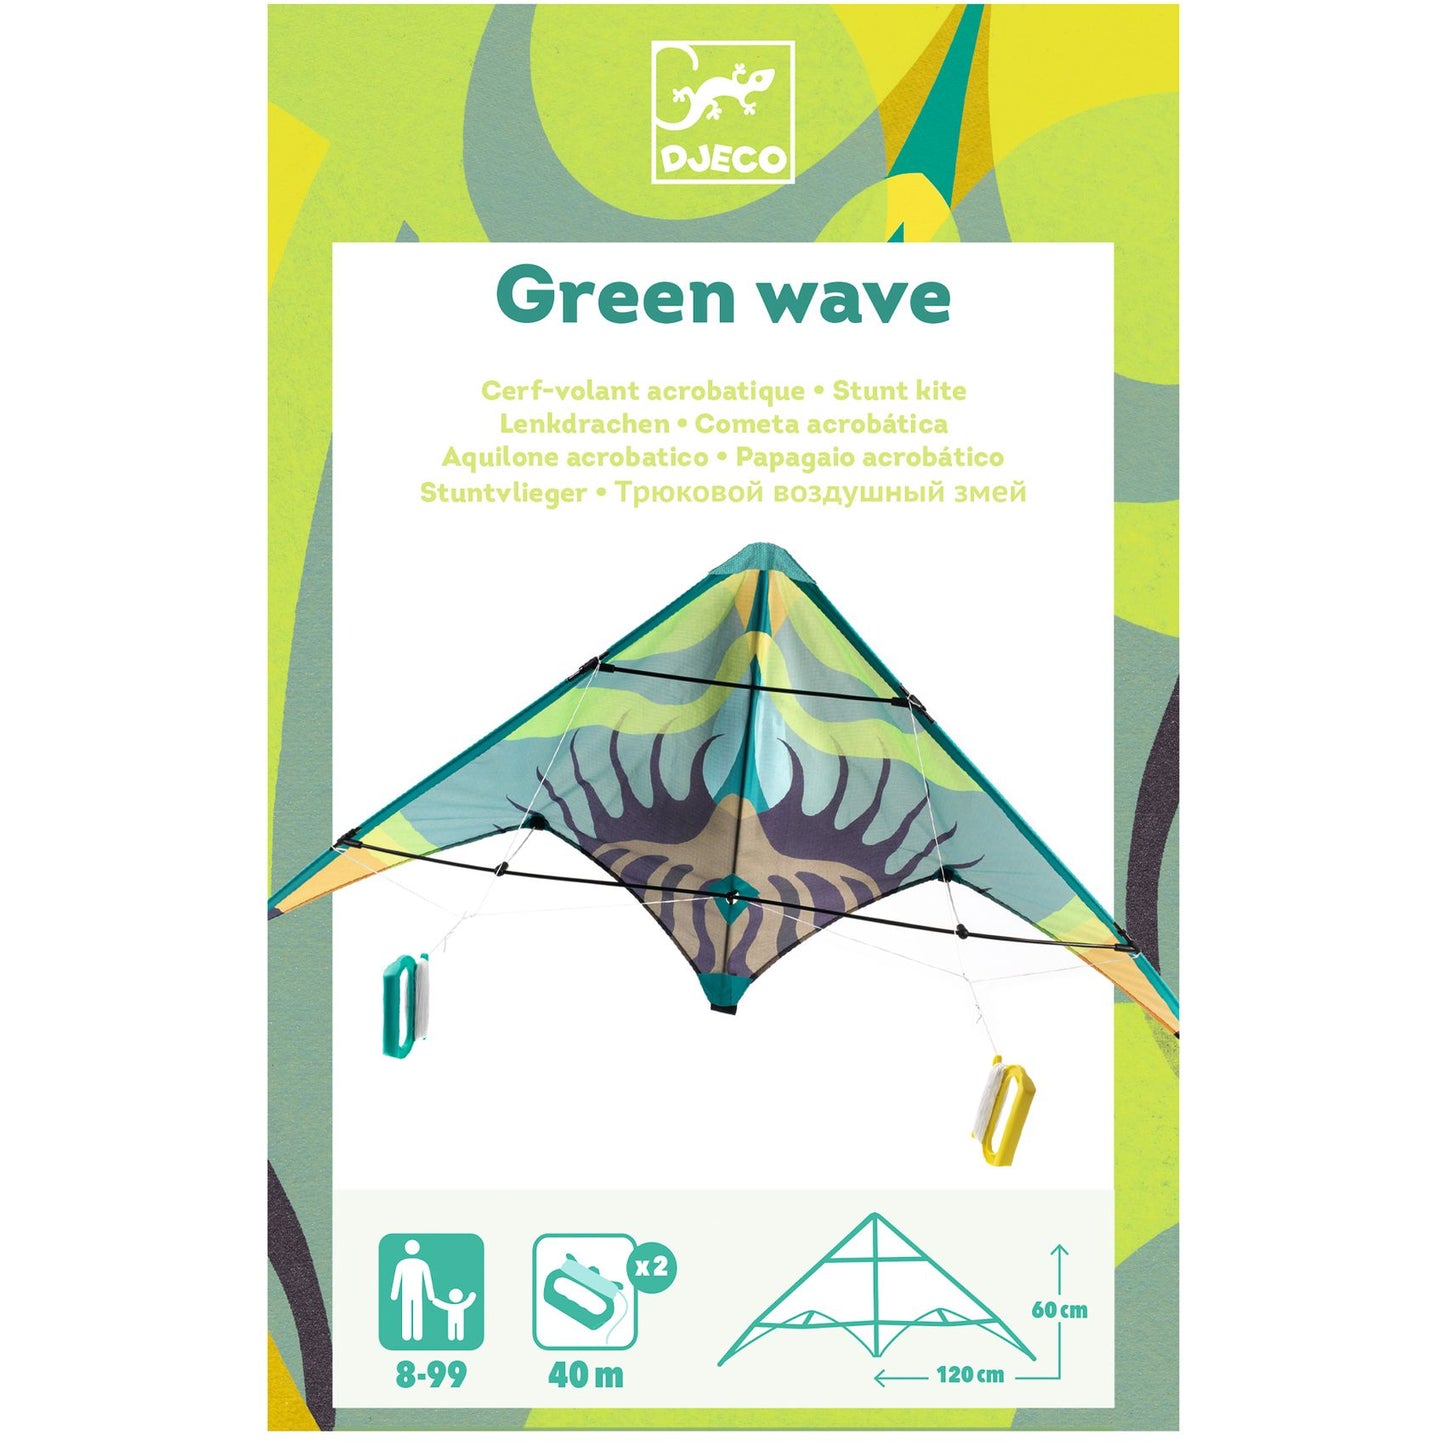 Aquilone Maxi - Green Wave